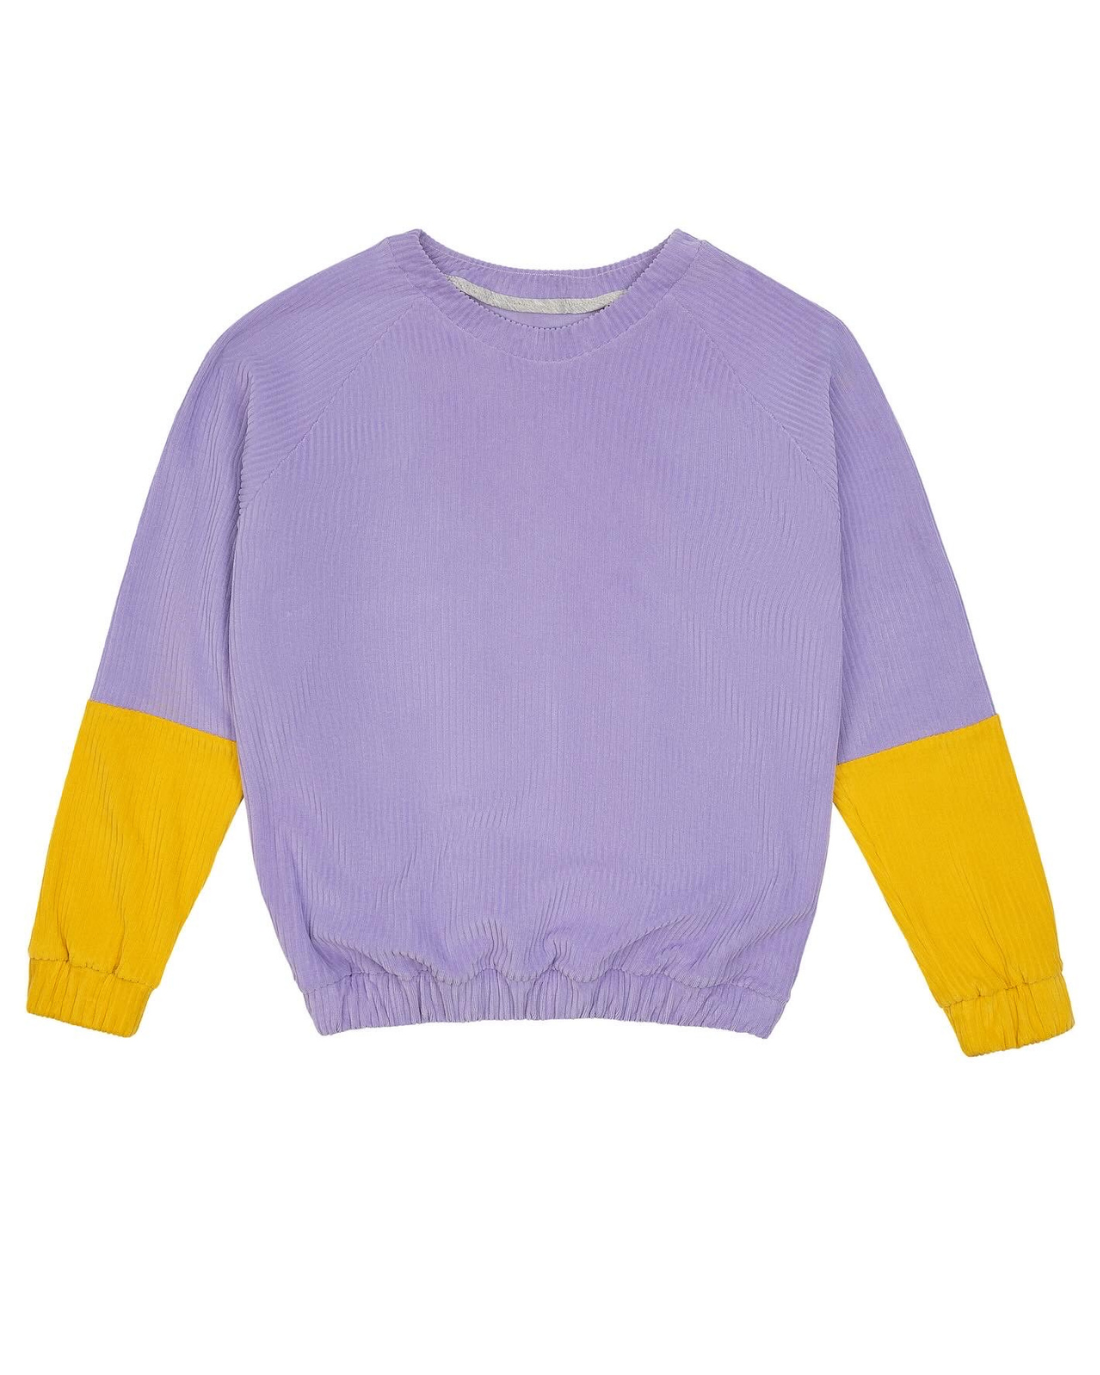 Fairer Unisex Sweater aus Cordnicki in Bio-Baumwolle in Flieder mit Gelben Ärmeln von der Marke Oktopulli 